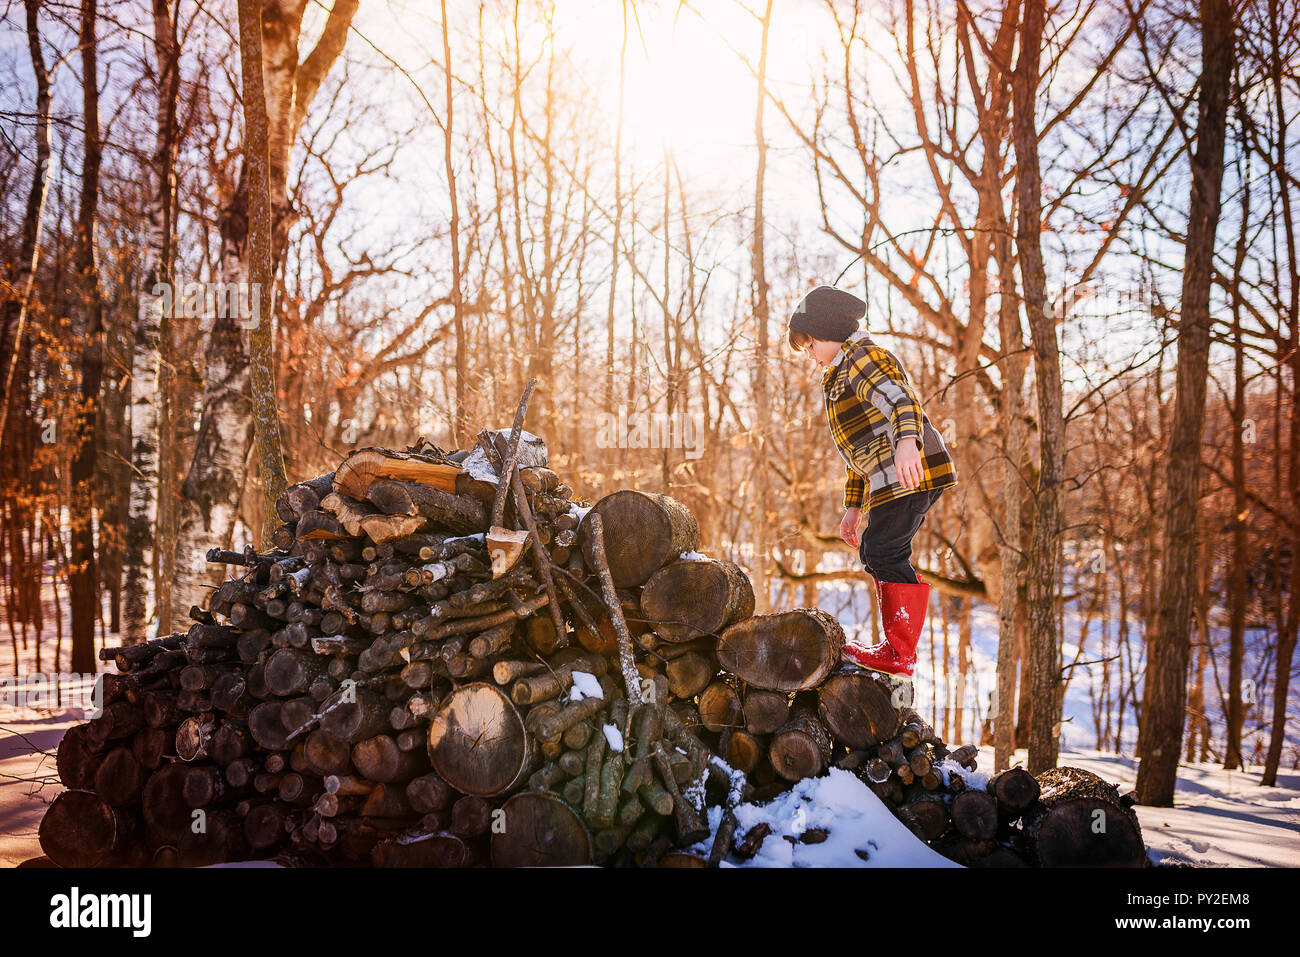 Garçon debout sur un tas de bois dans la neige, United States Banque D'Images